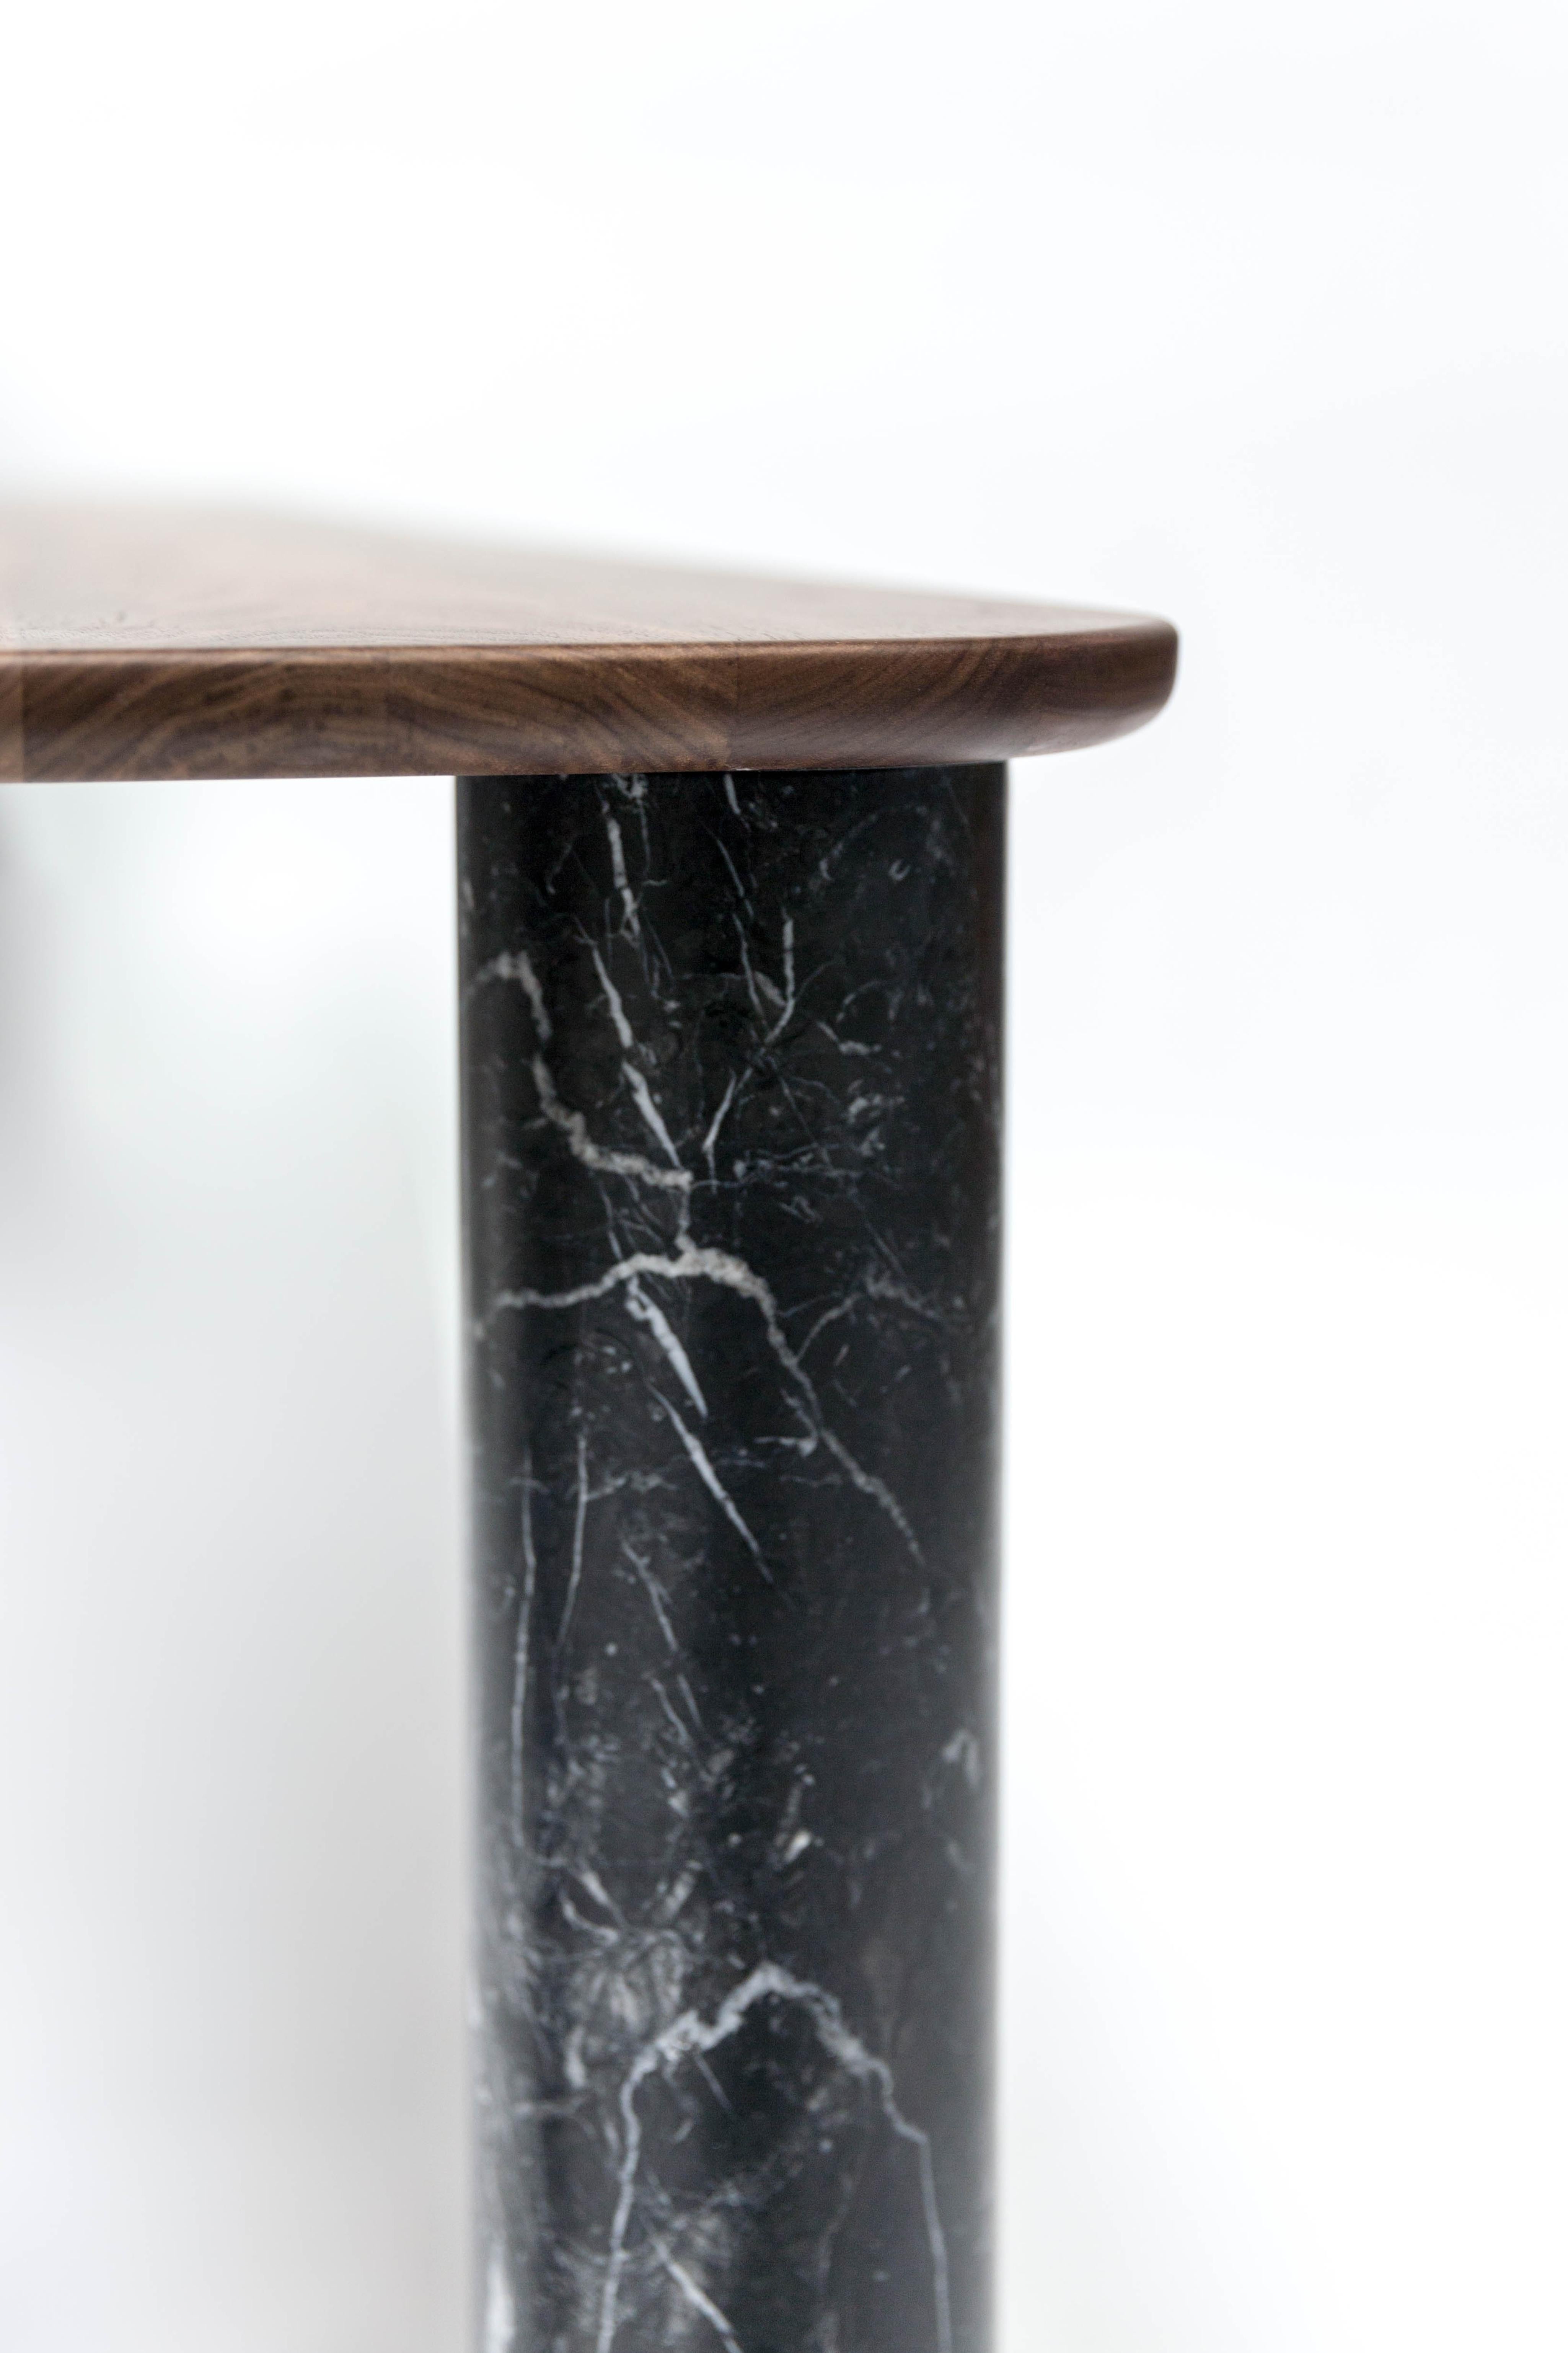 Moderne Sunday Table - Black Legs Walnut Top, by J-B Souletie for La Chance en vente